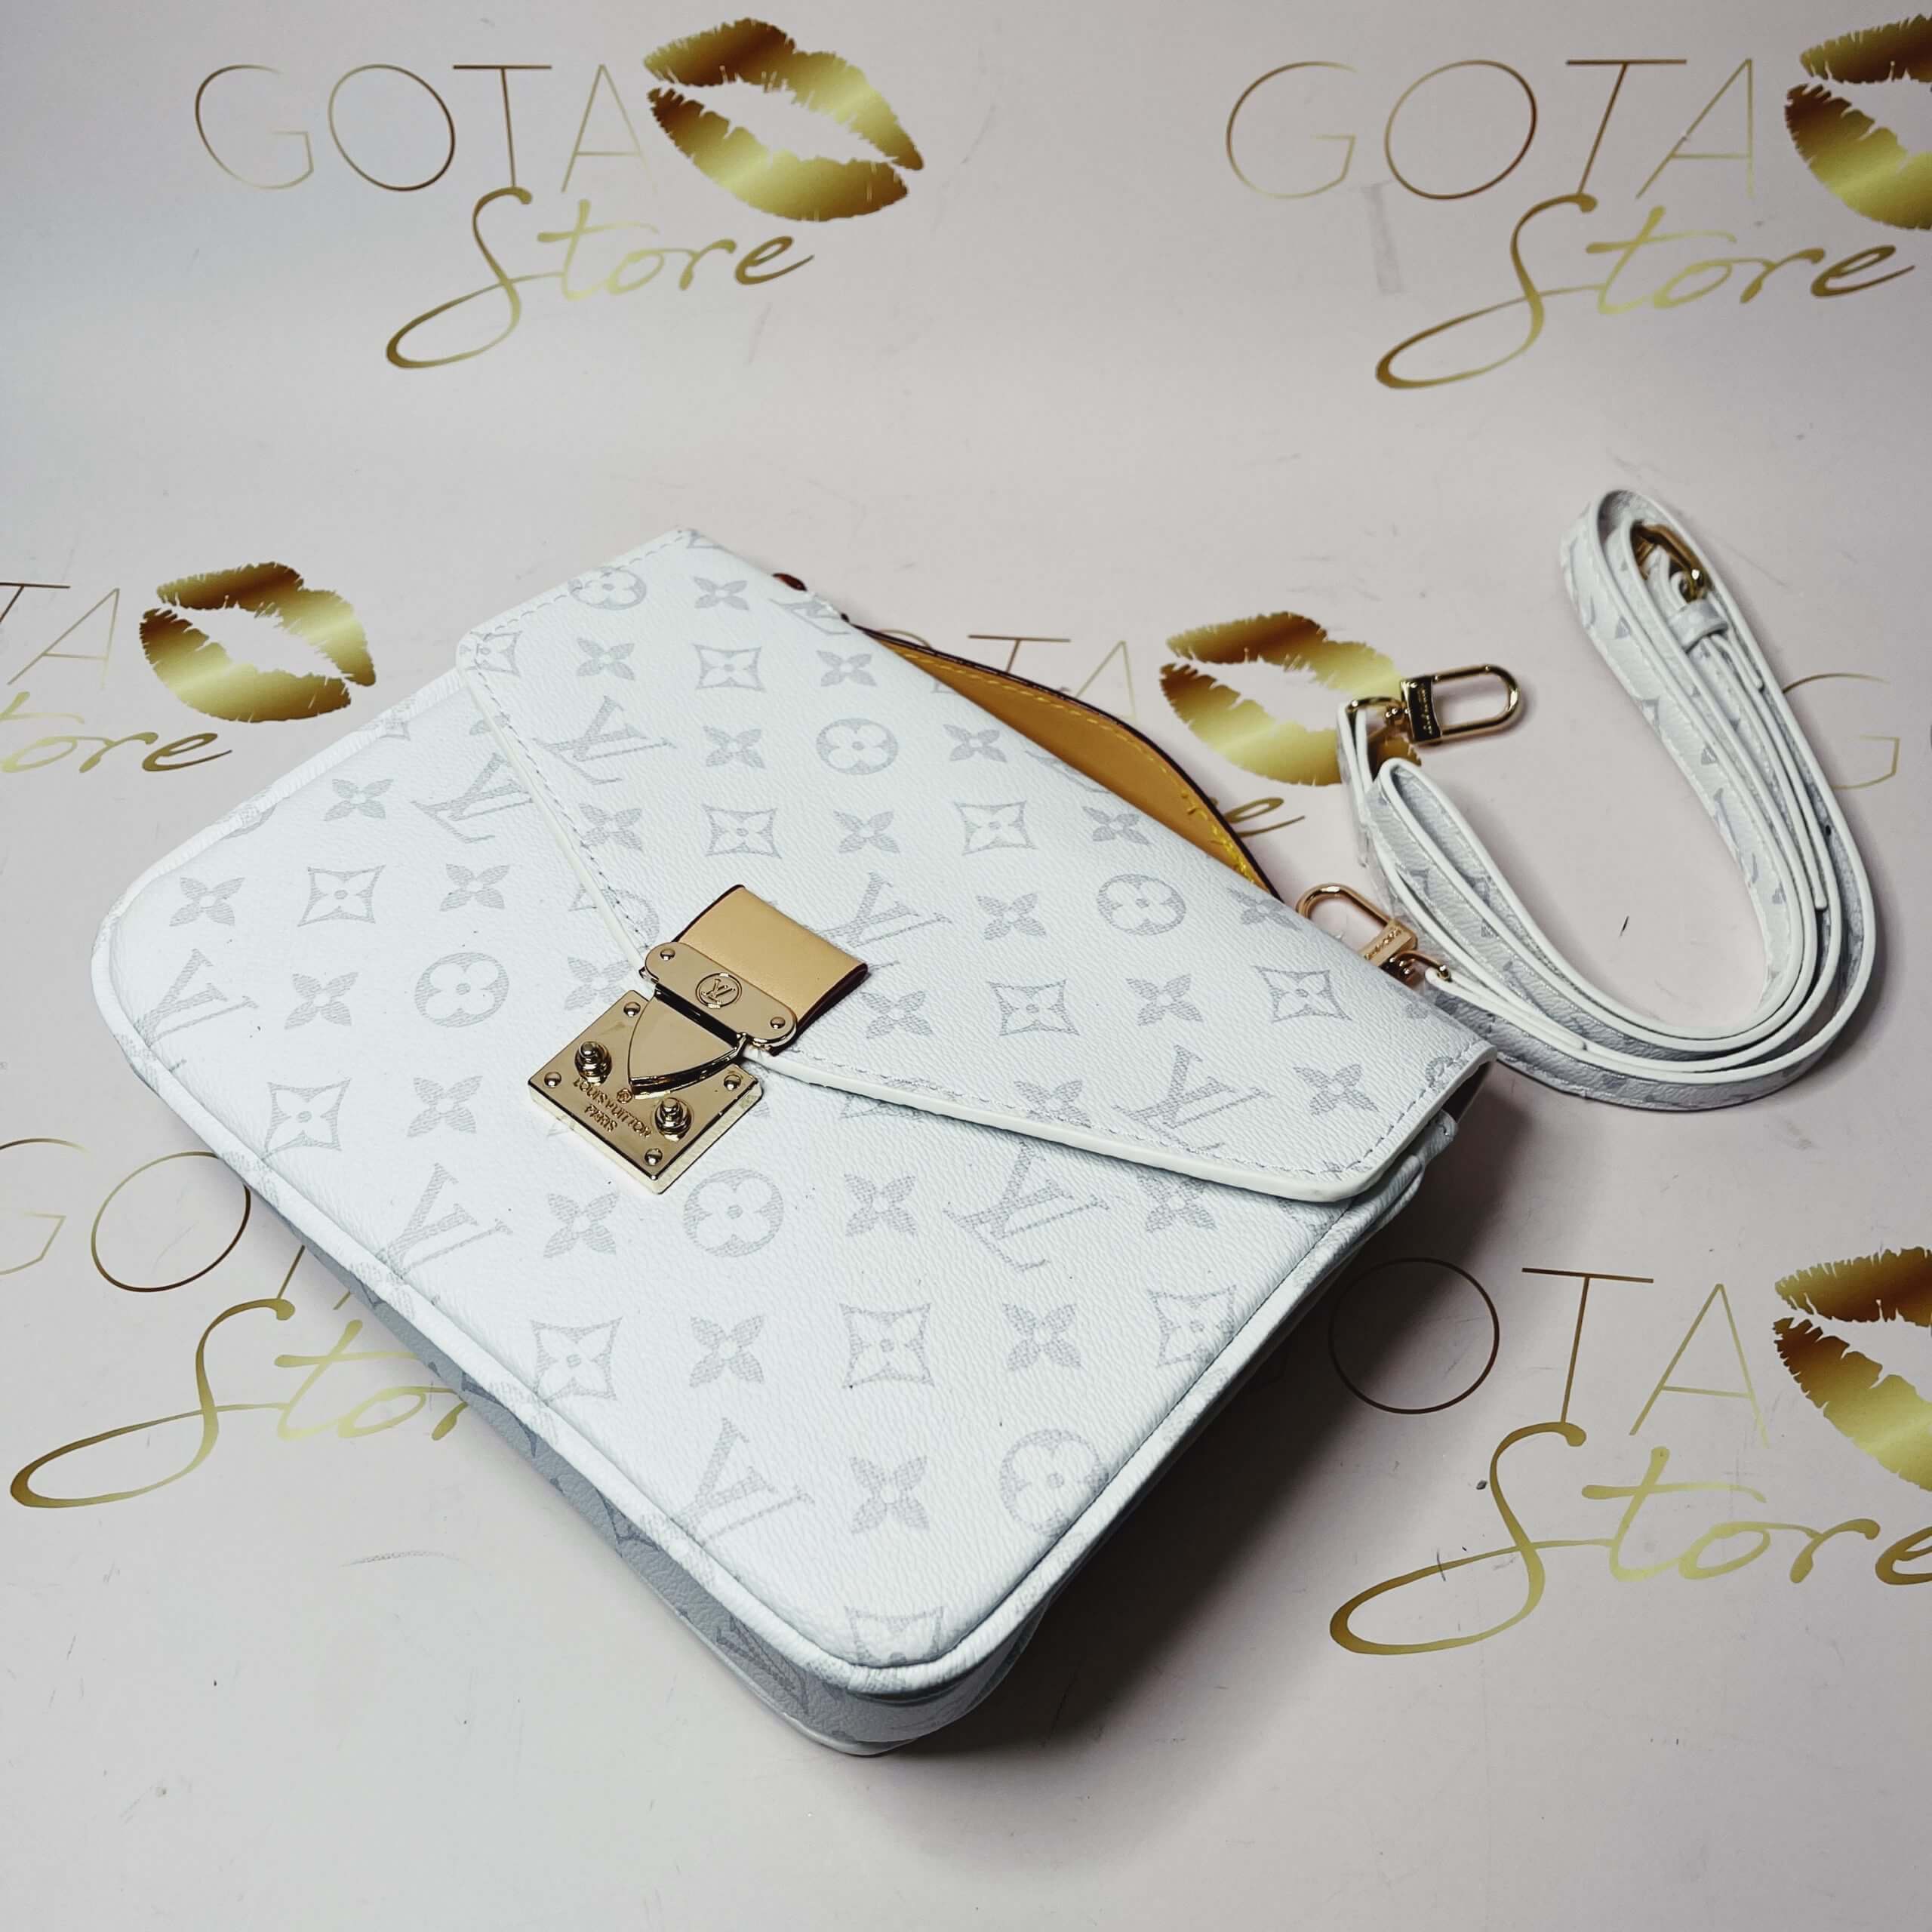 LV Neverfull MM Damier Azur - White Leather Women's Handbag - GOTA Store